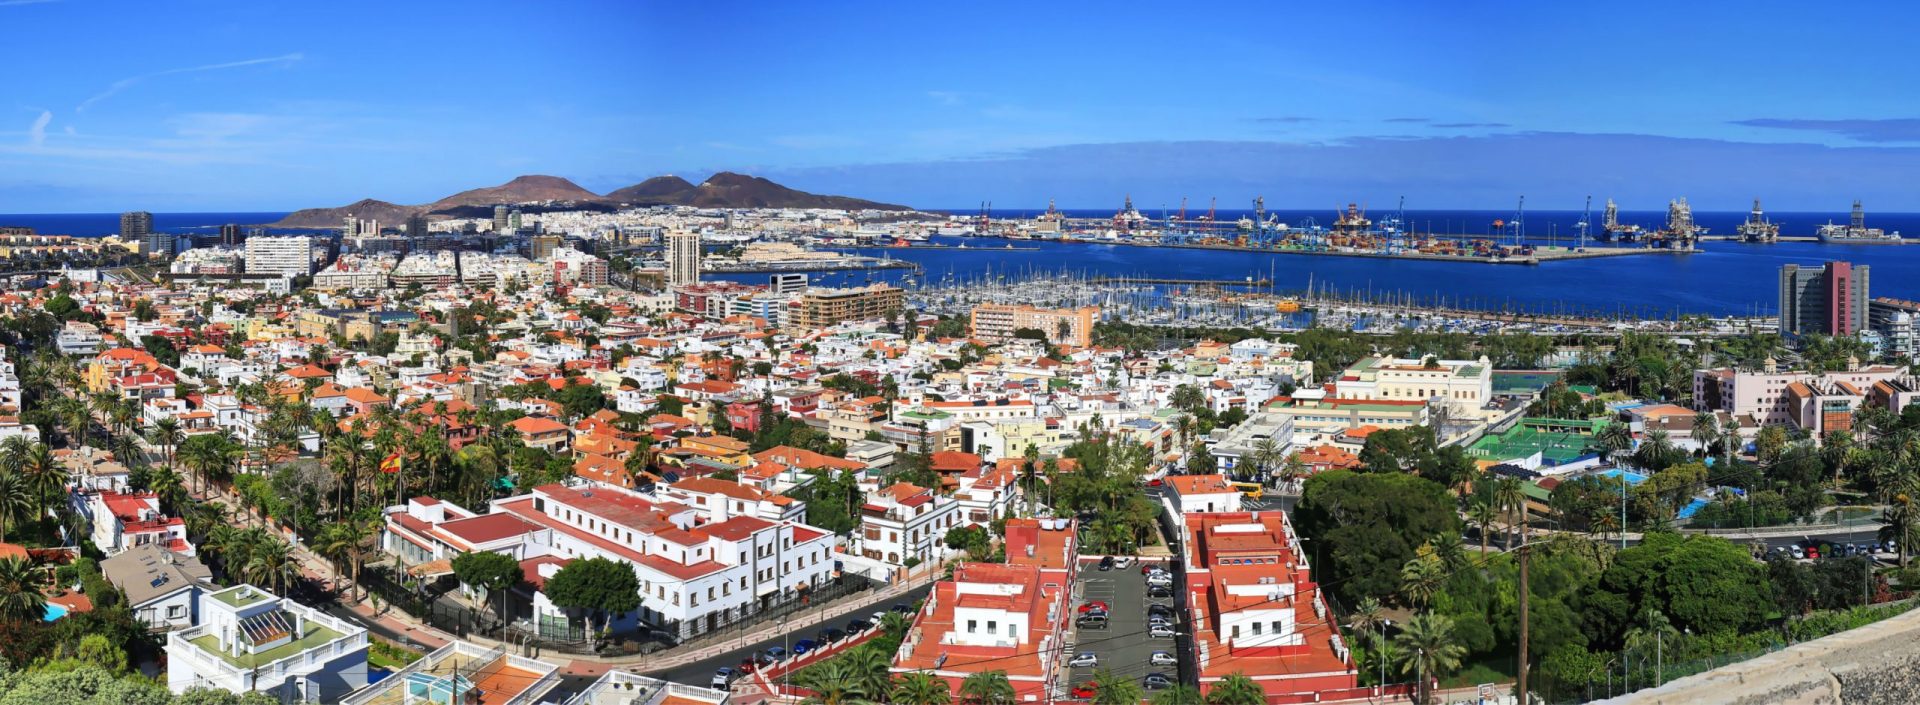 Landscape of Las Palmas